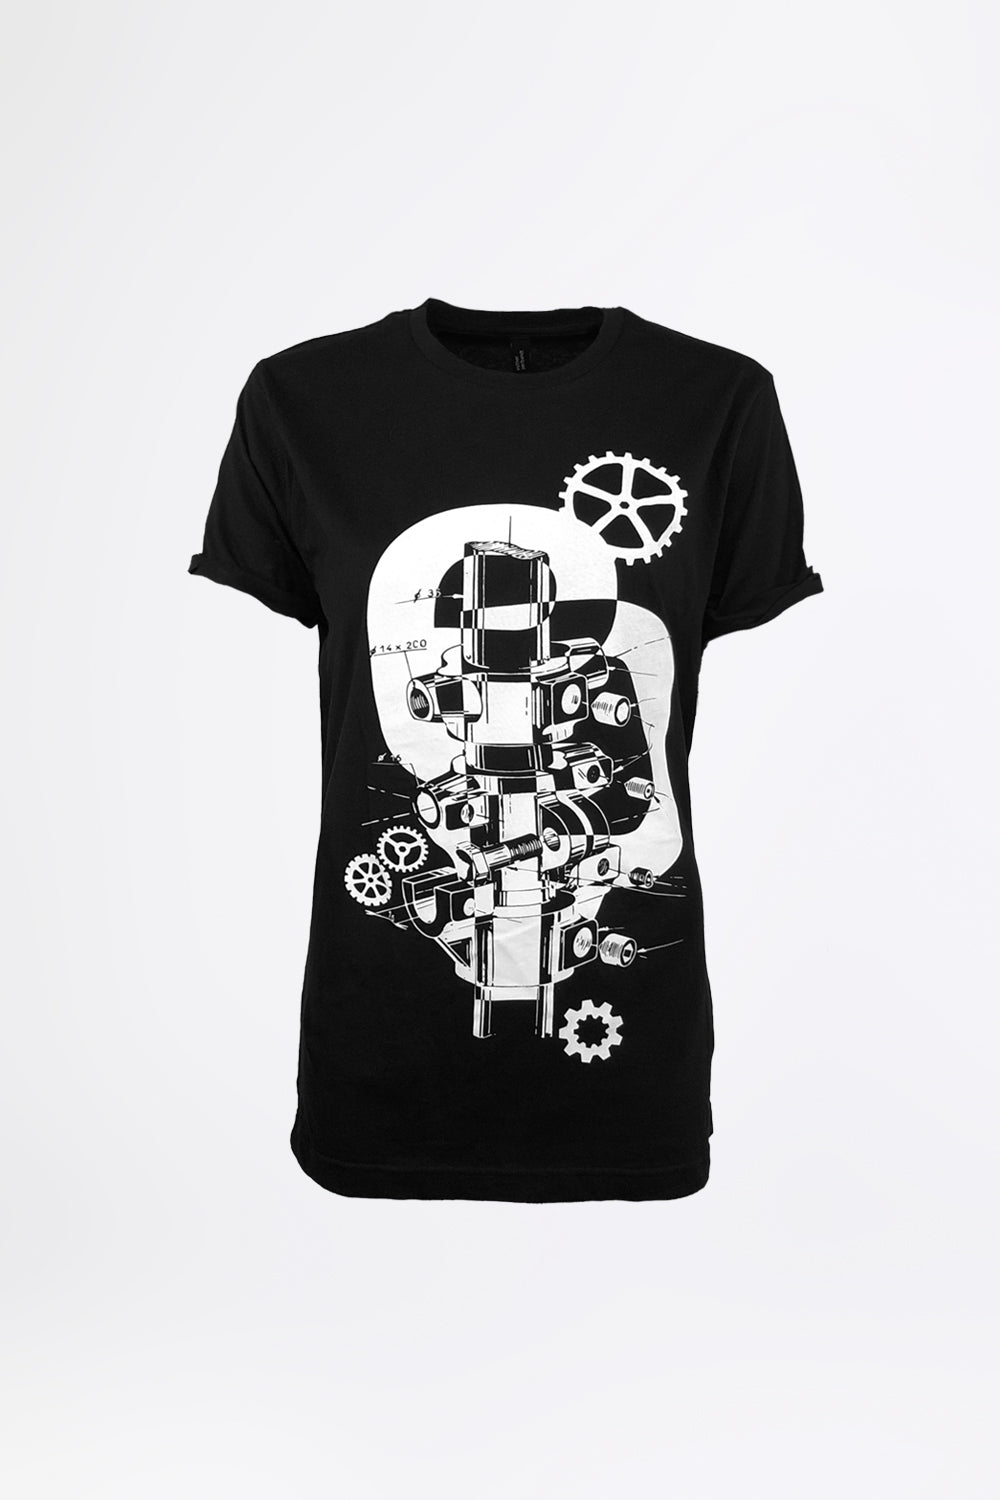 DREAM MACHINE - Schwarz Statement T-Shirt - Männer